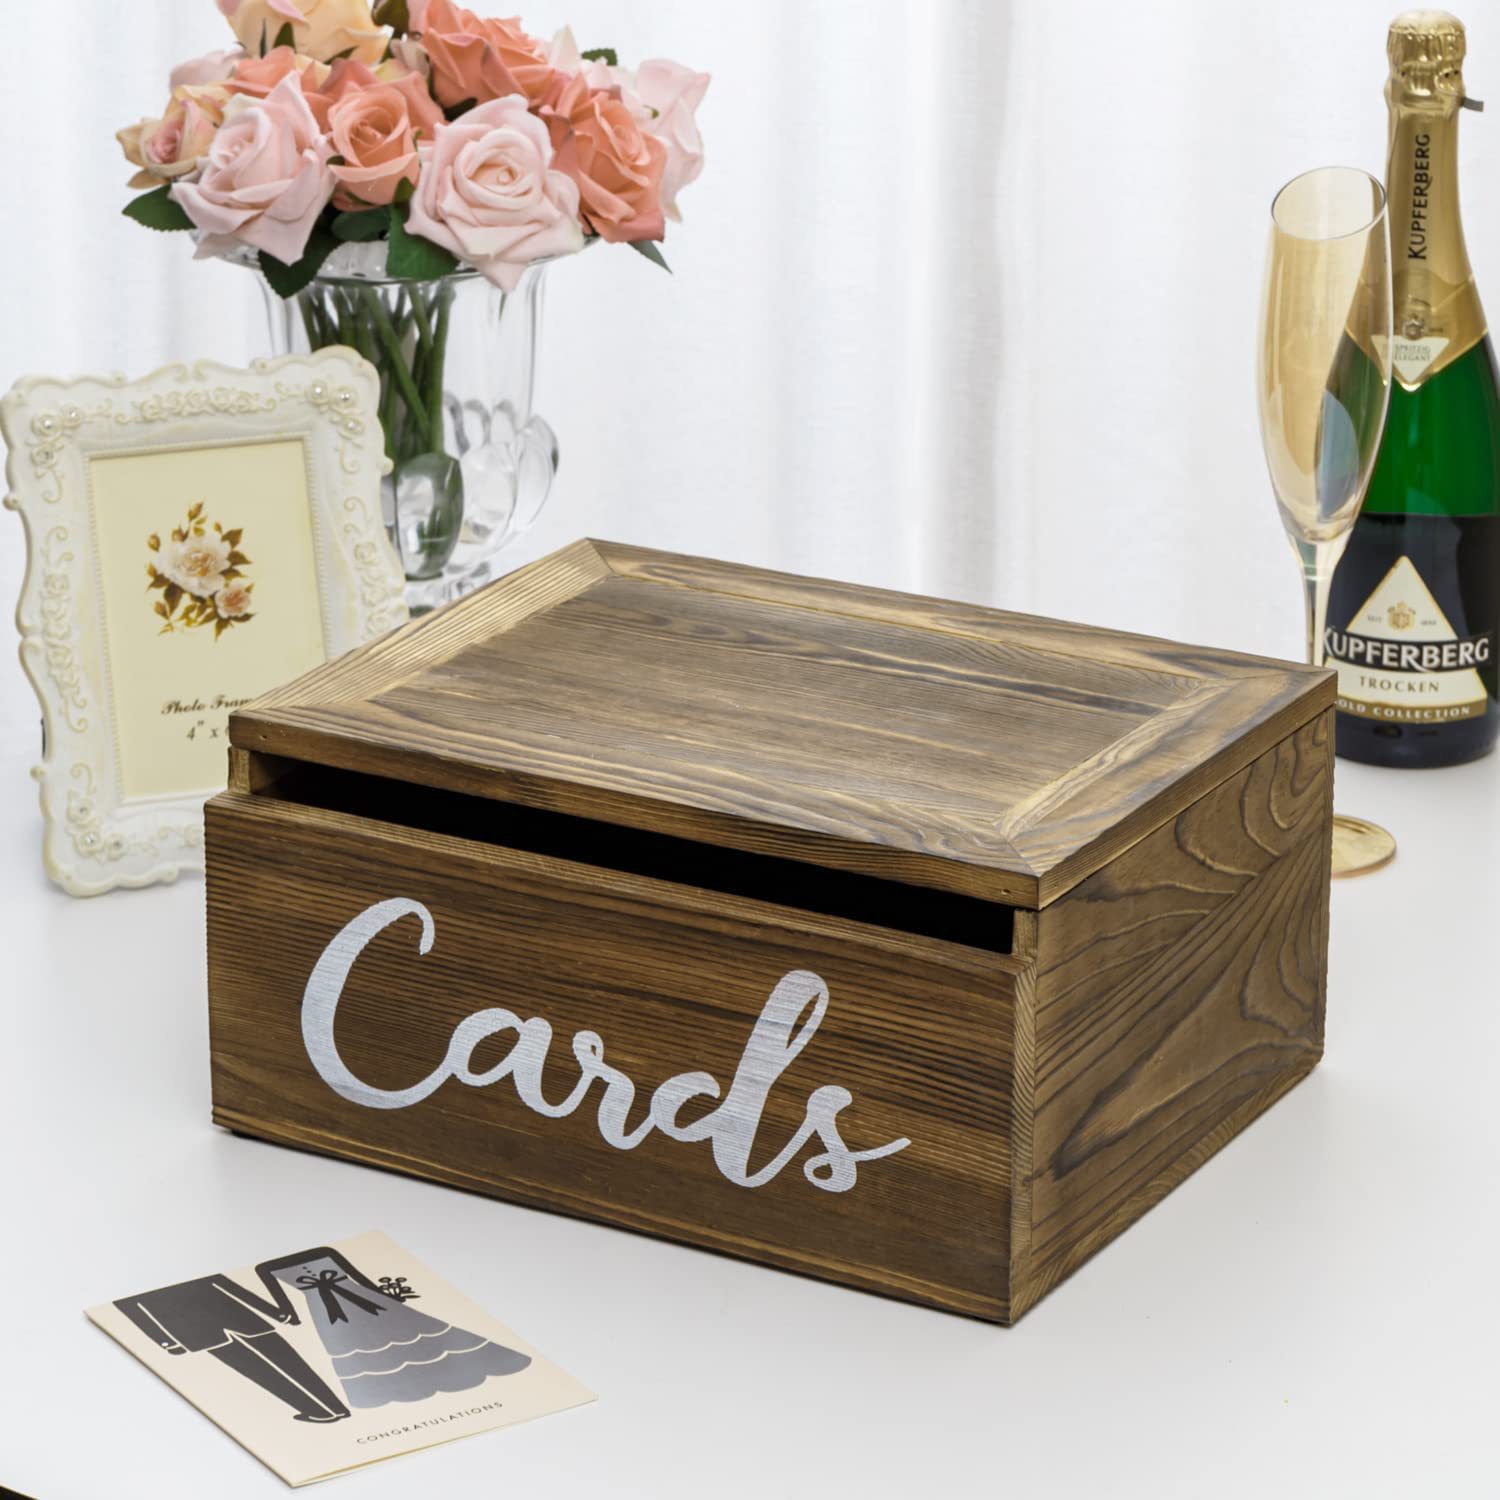 壁挂式实木婚礼卡片盒事件卡收集盒简约邮票信件整理木盒